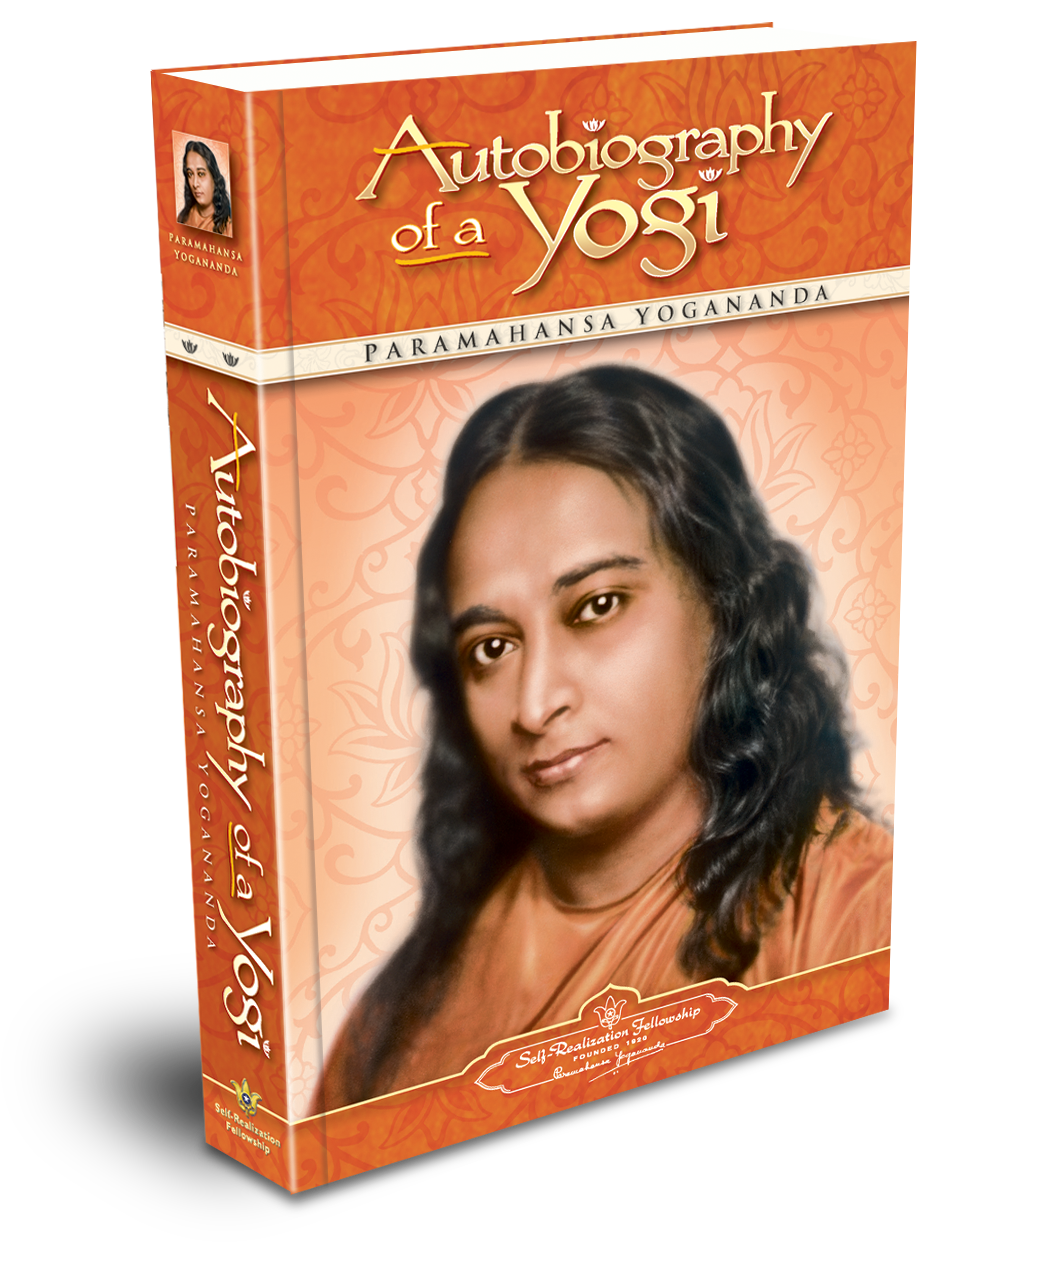 Книга парамахансы йогананды автобиография йога. Йогананда автобиография йога. Автобиография йога Парамаханса. Парамаханса Йогананда йога. Парамаханса Йогананда книги.